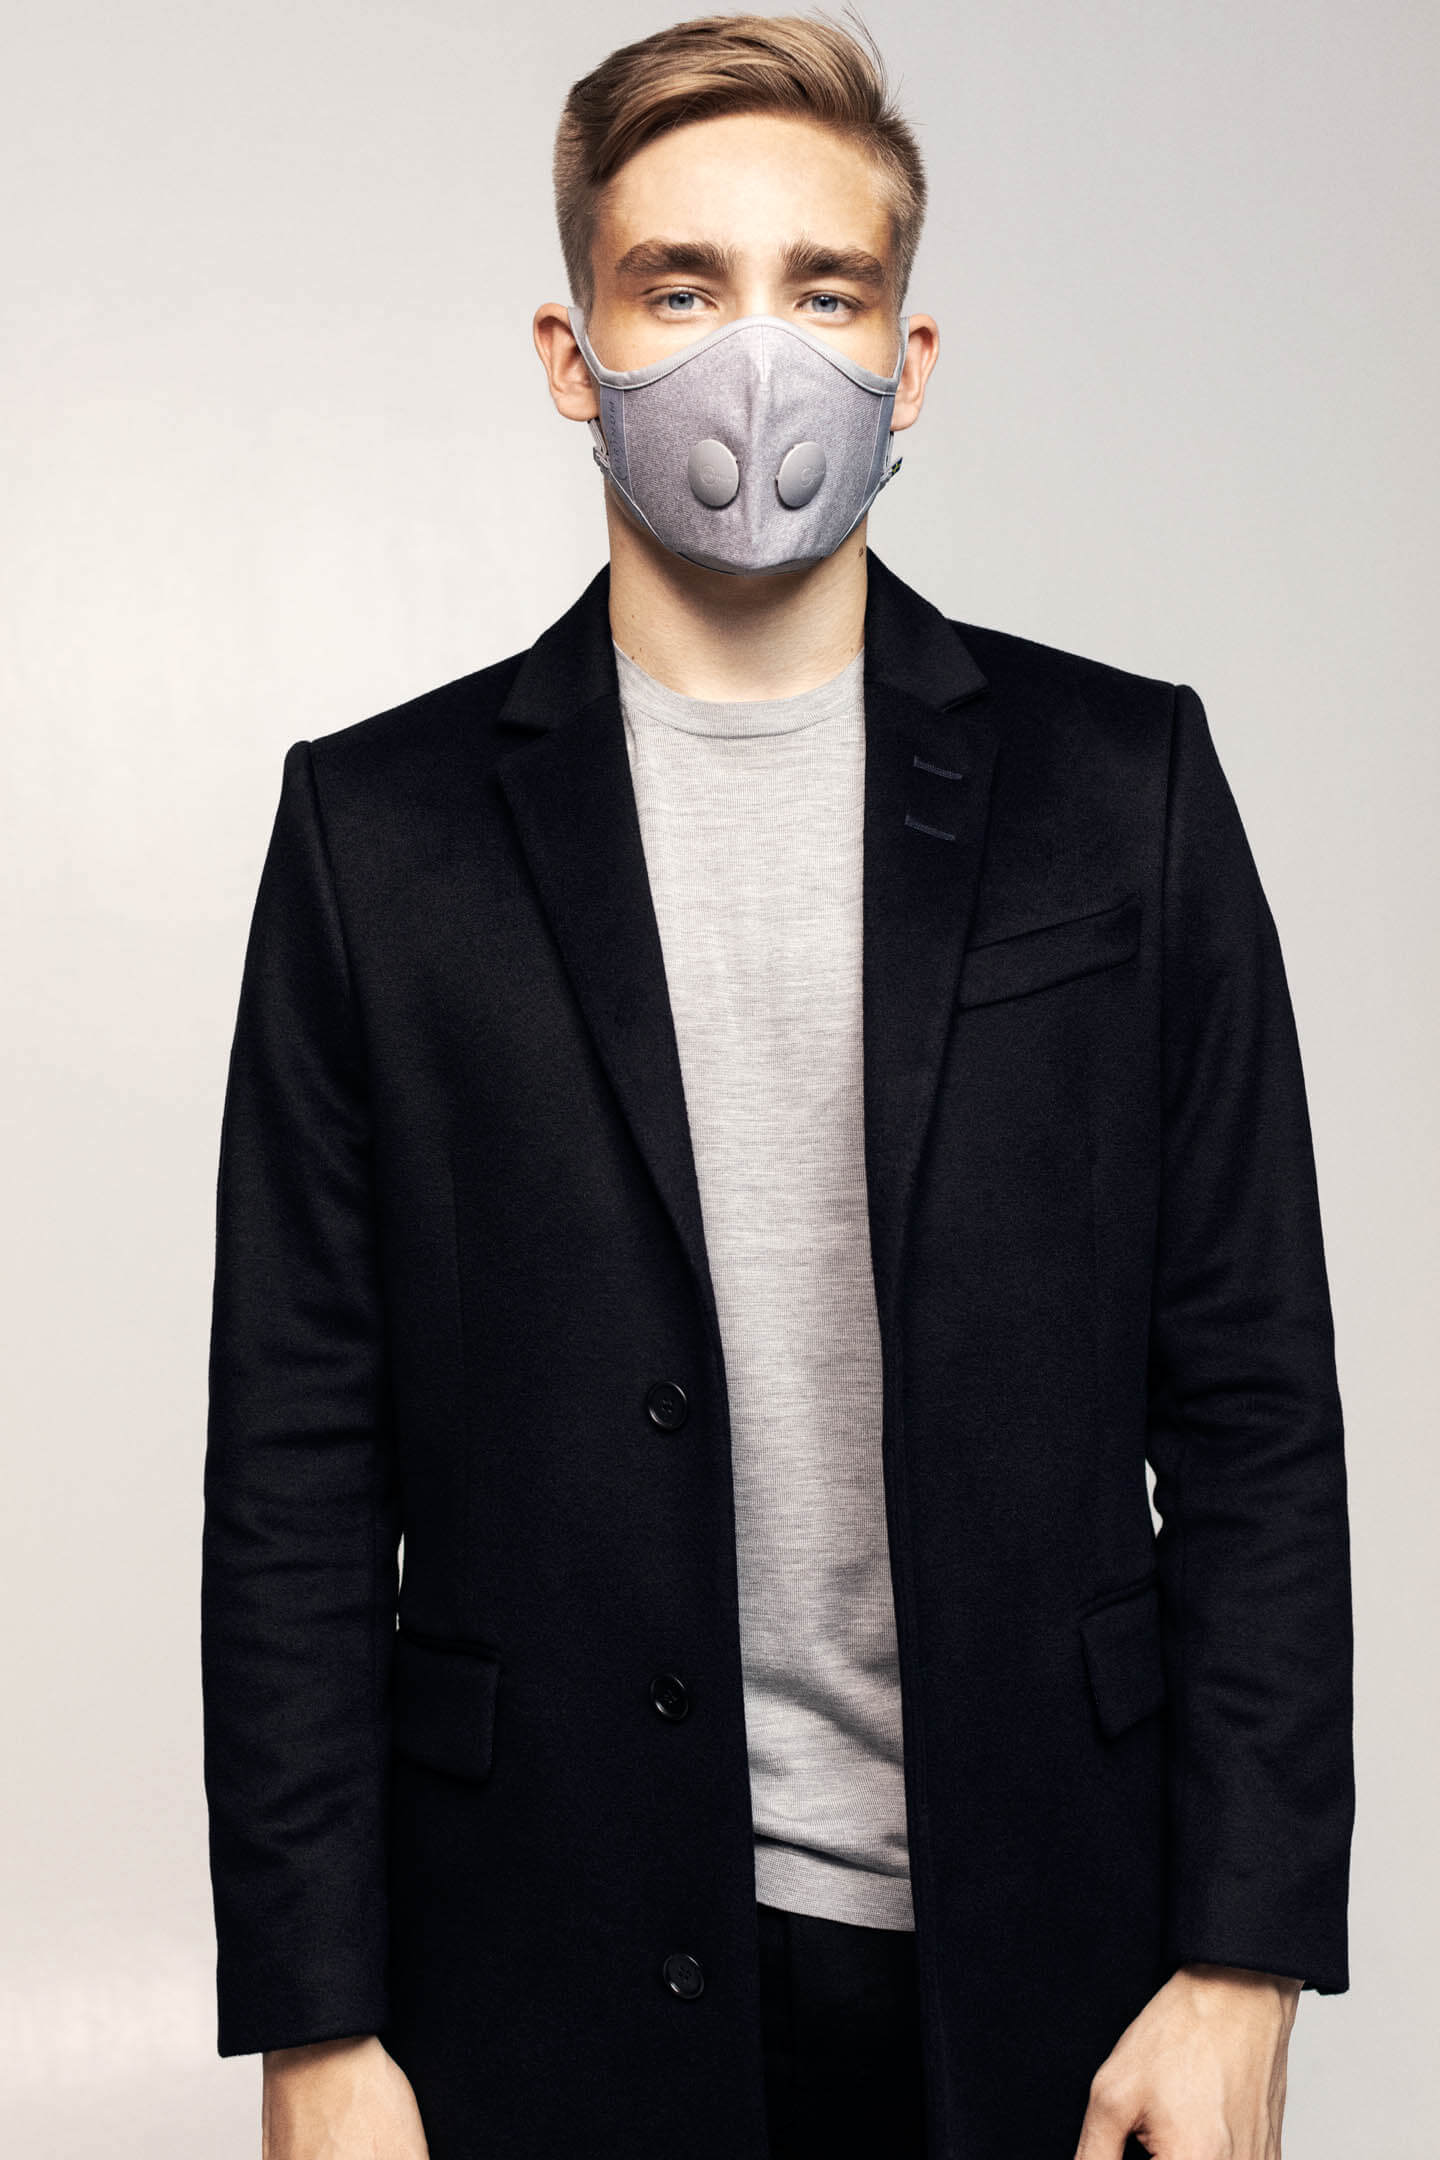 Airinum Urban Air Mask 2.0 - Ante Shop